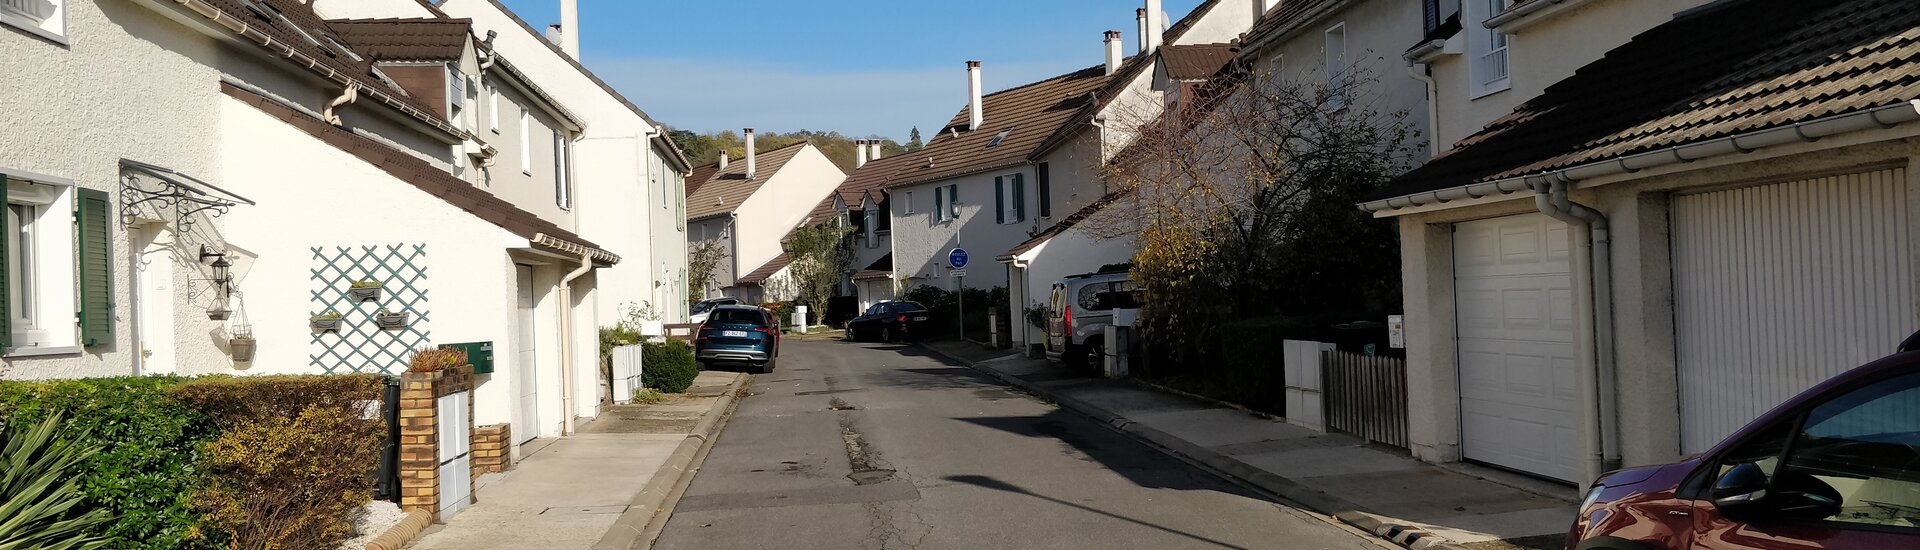 Mairie de Margency dans le Val d'Oise département du 95